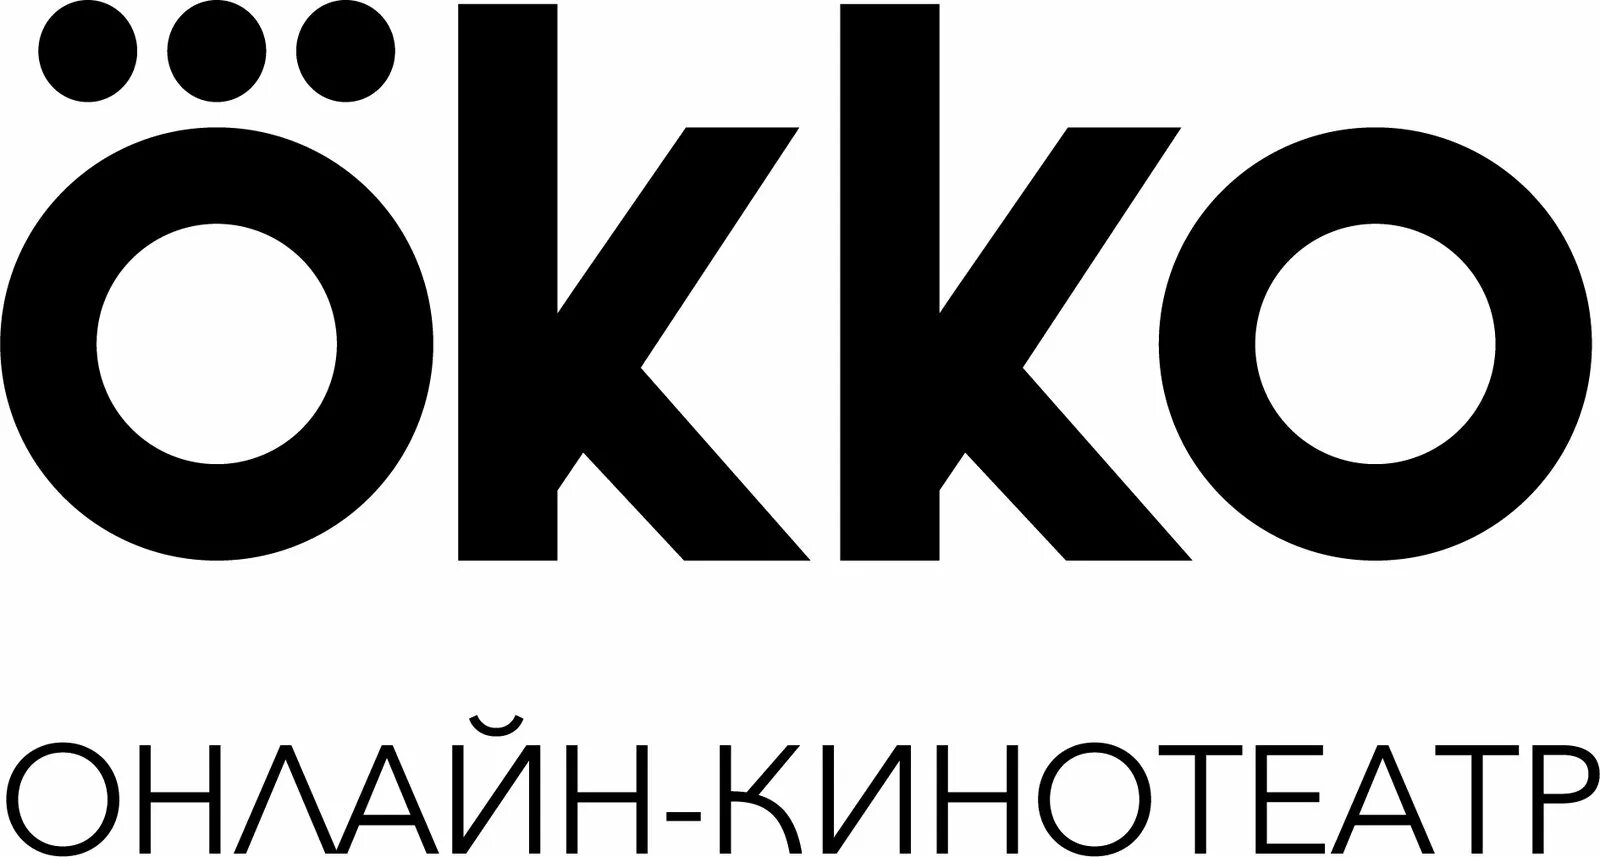 Сайт окко. Okko. ОККО лого. Кинотеатр ОККО логотип. Ока.